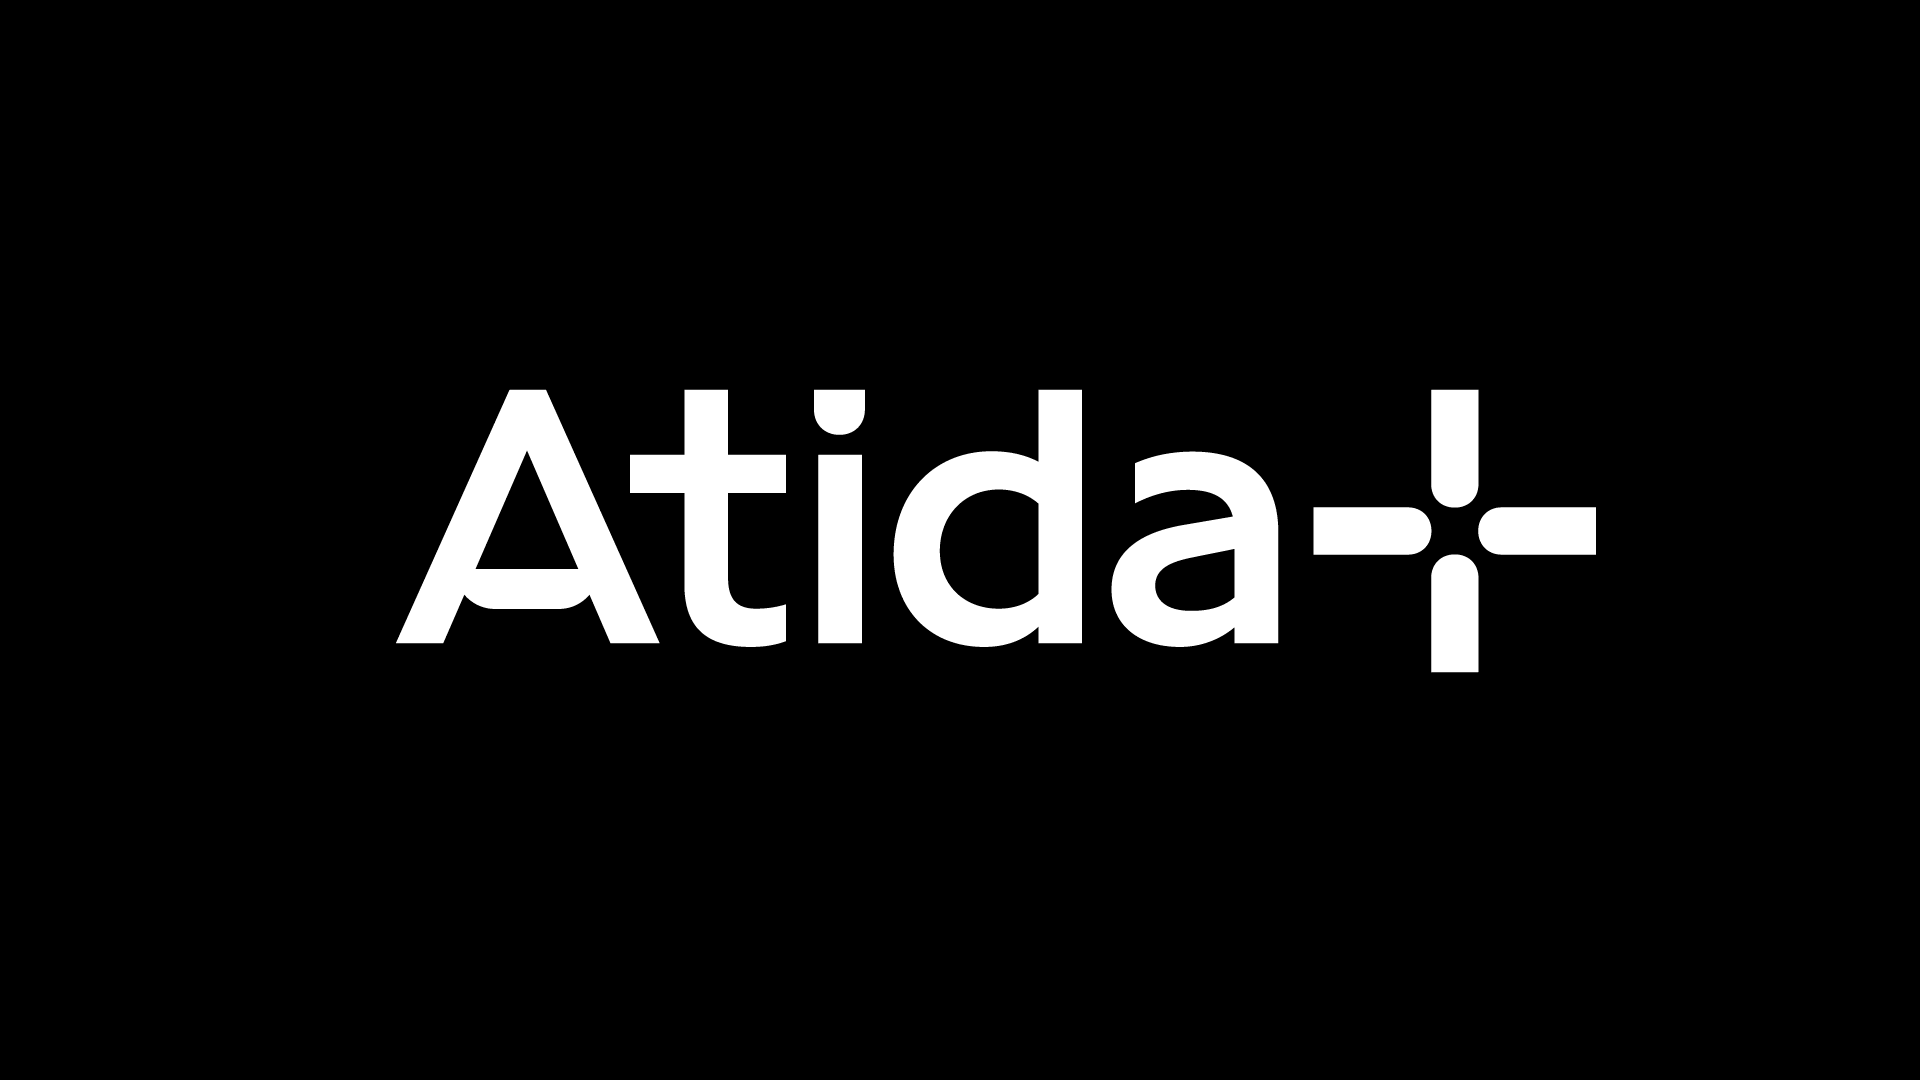 Branding: Atida